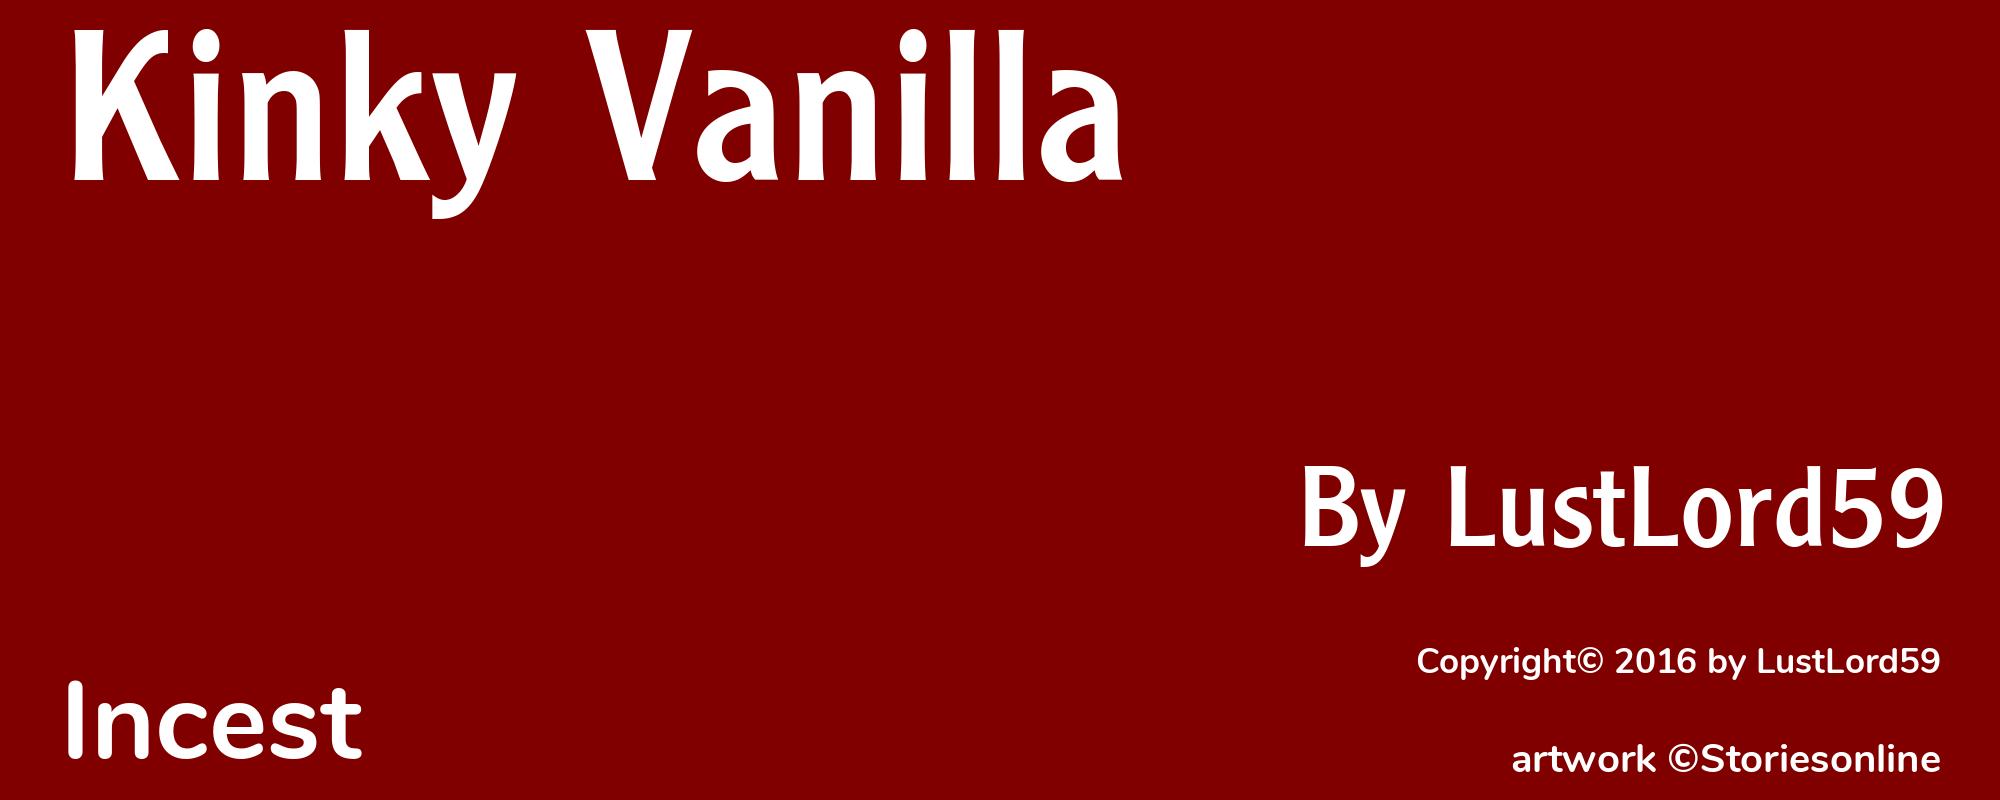 Kinky Vanilla - Cover